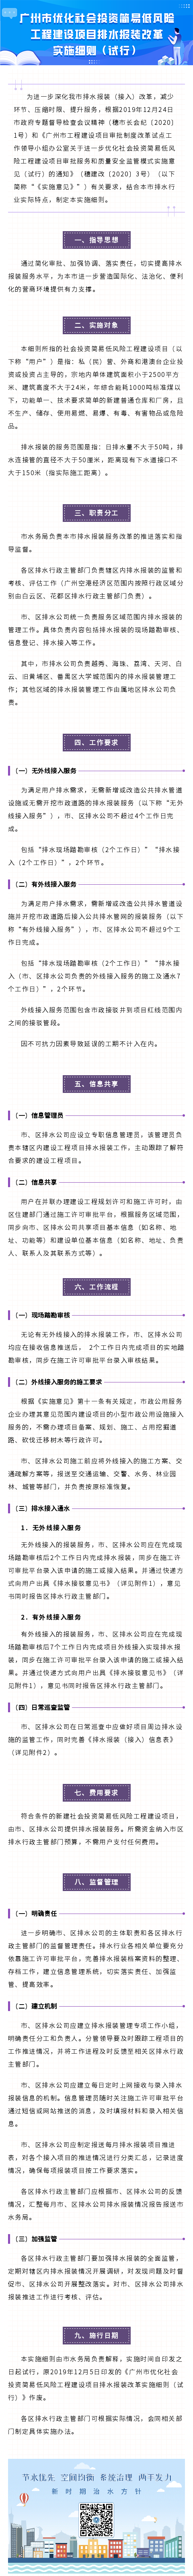 12广州市优化社会投资简易低风险工程建设项目排水报装改革实施细则（试行）.png